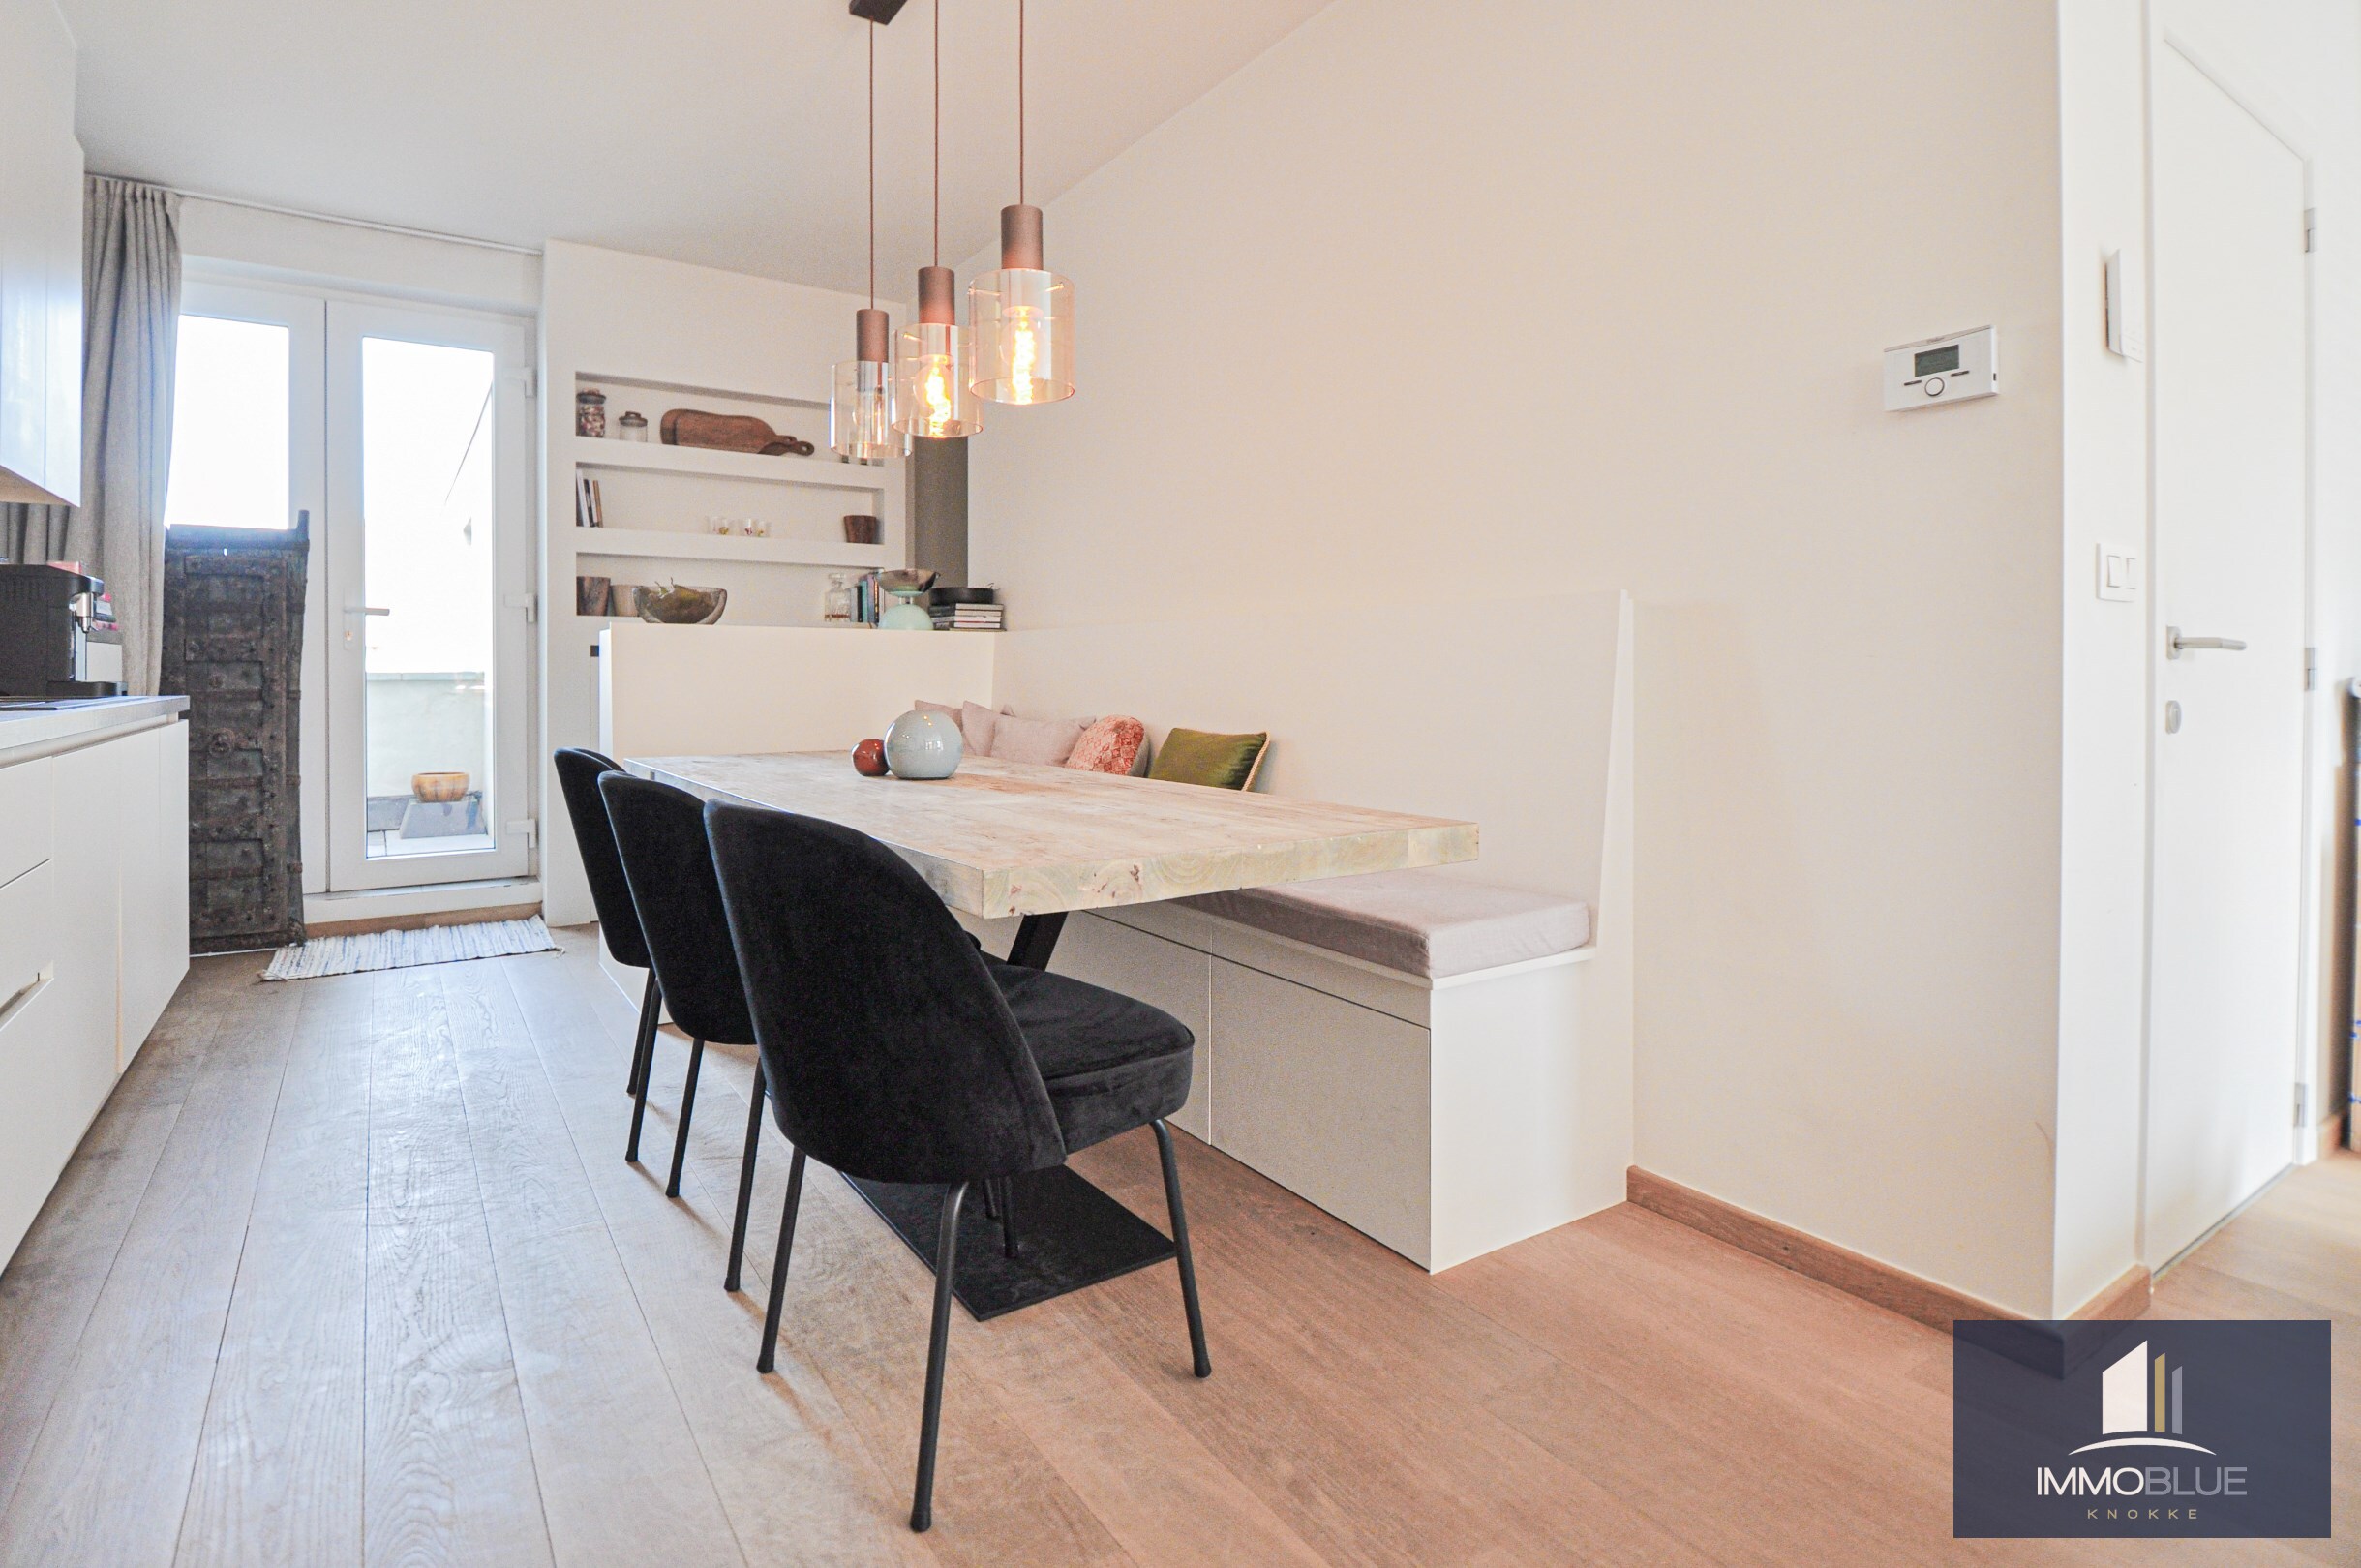 Centraal gelegen, lichtrijk en recent gerenoveerd appartement met terras in een kleine residentie. 